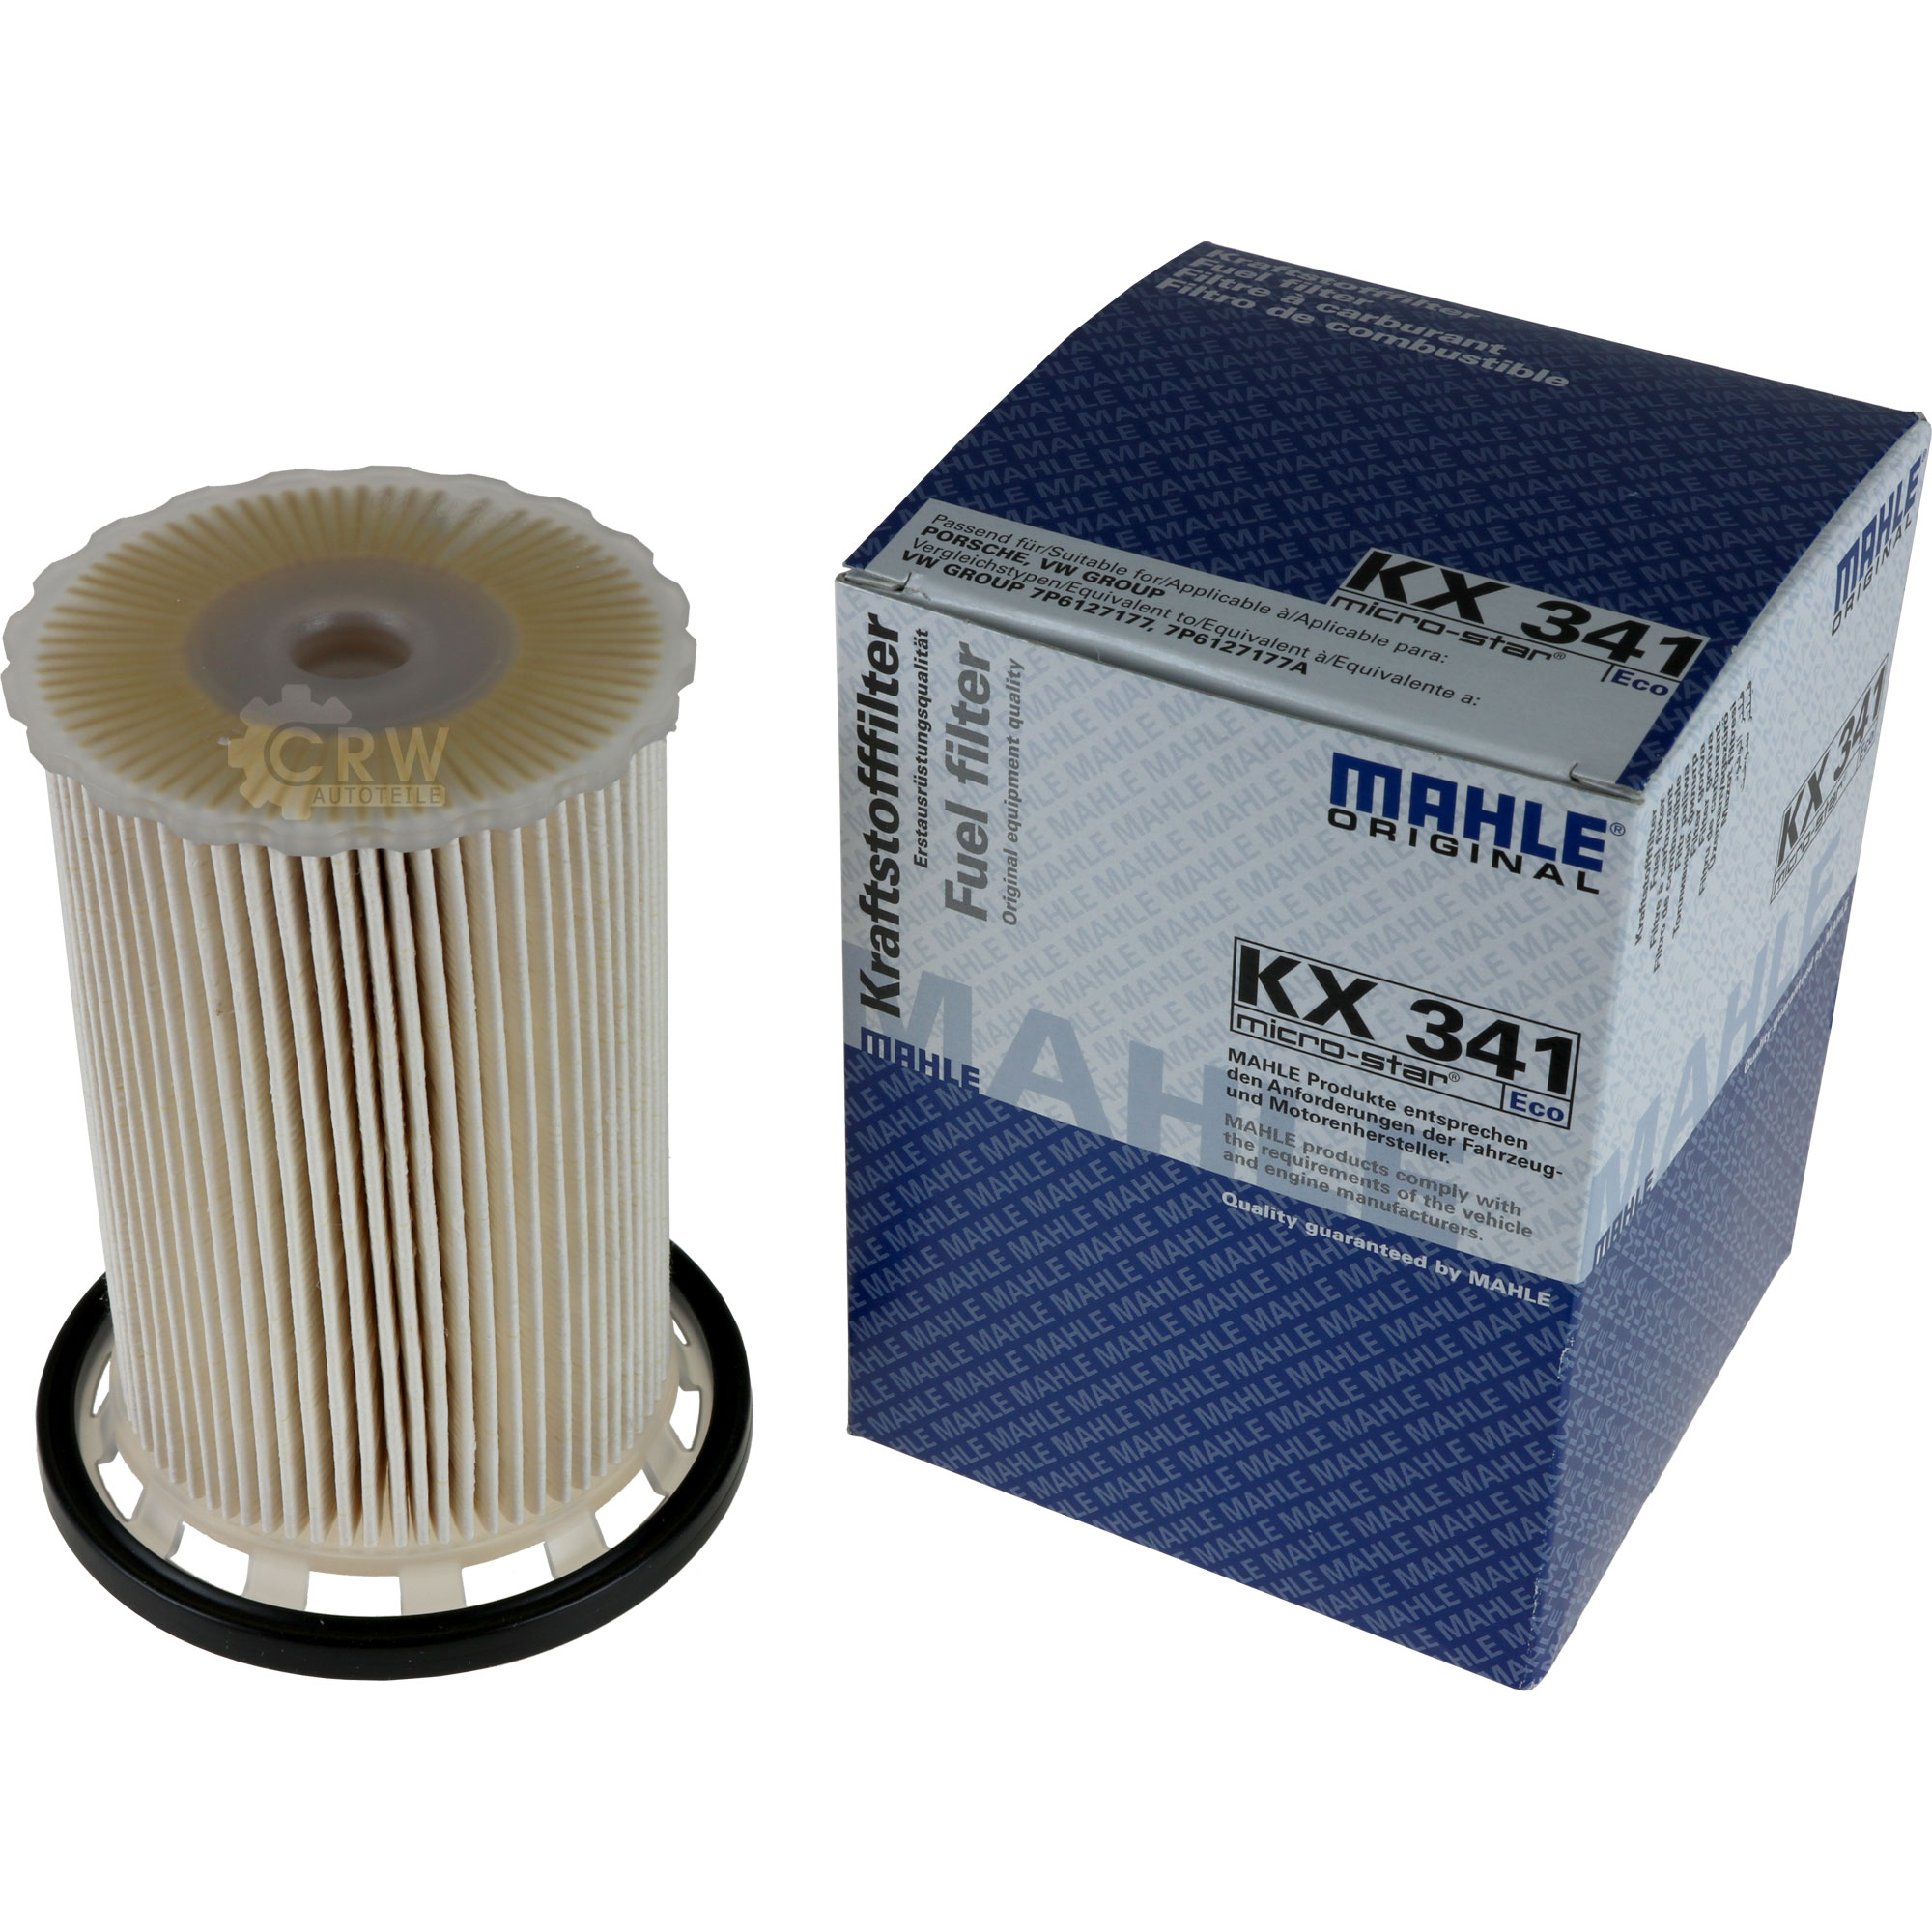 MAHLE / KNECHT KX 341 Kraftstofffilter Fuel Filter